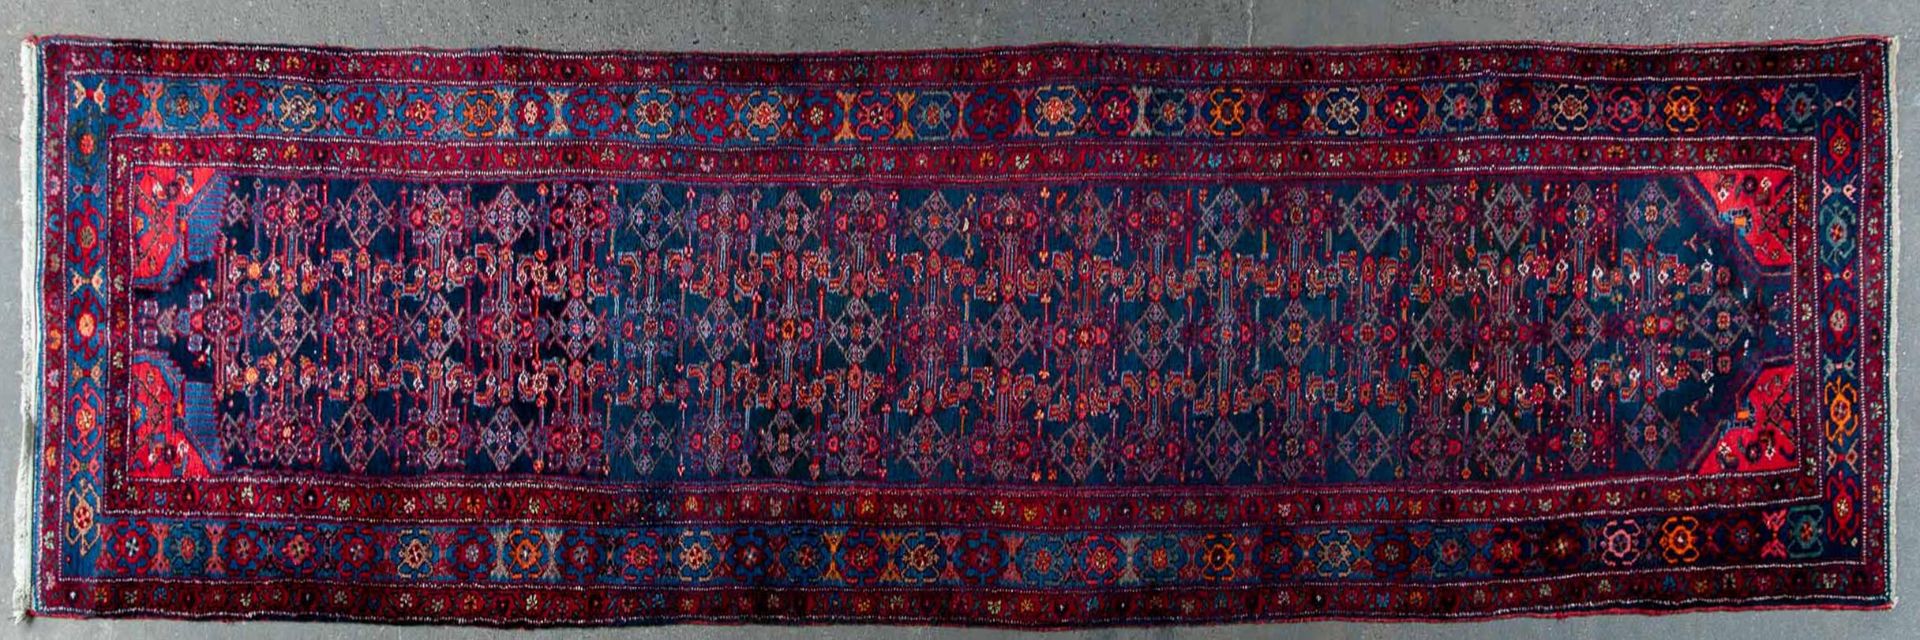 Ältere iranische Teppichgalerie, ca. 114 x 478, durchgemusterter, indigoblauer Fond, breite rötlich